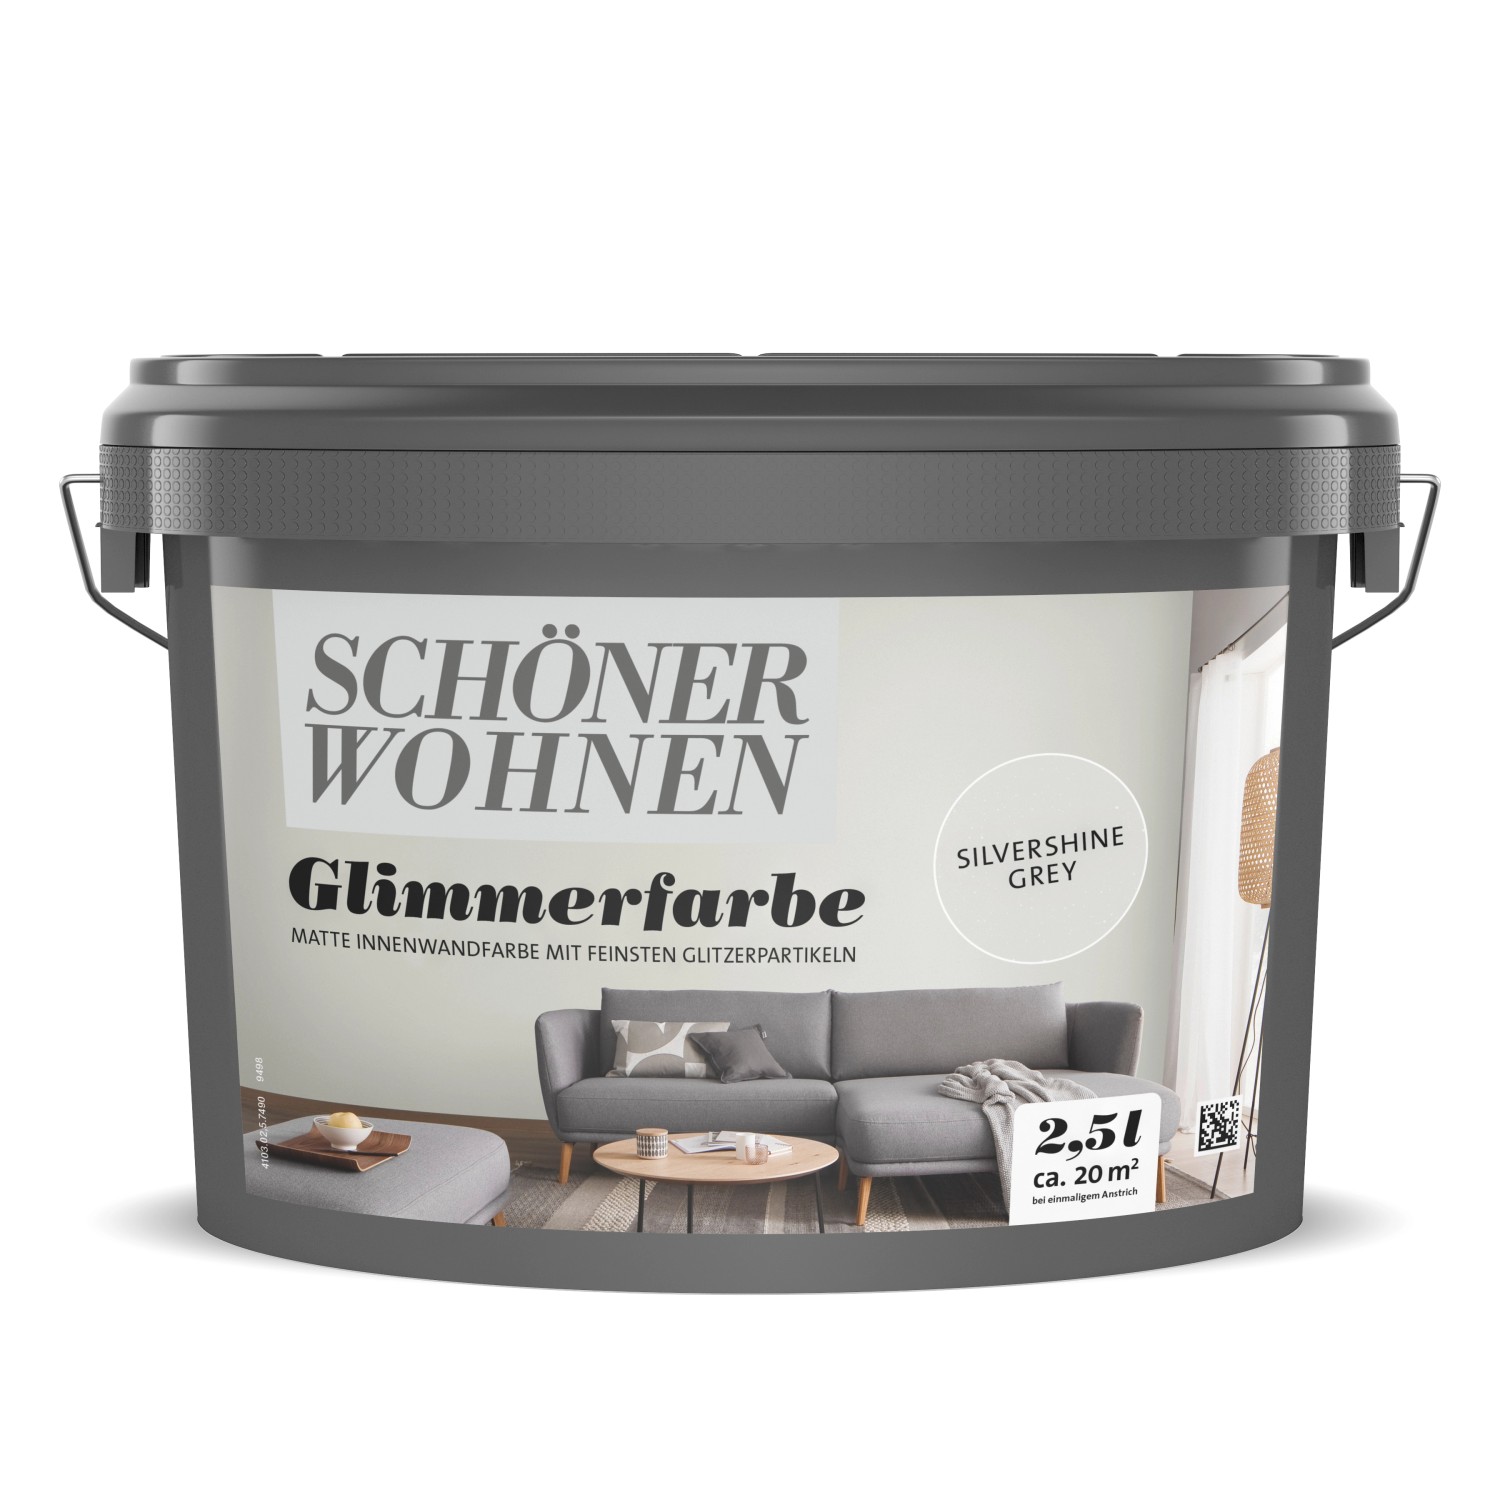 Schöner Wohnen GlimmerfarbeSilvershine Grey 2,5 l von SCHÖNER WOHNEN-Farbe